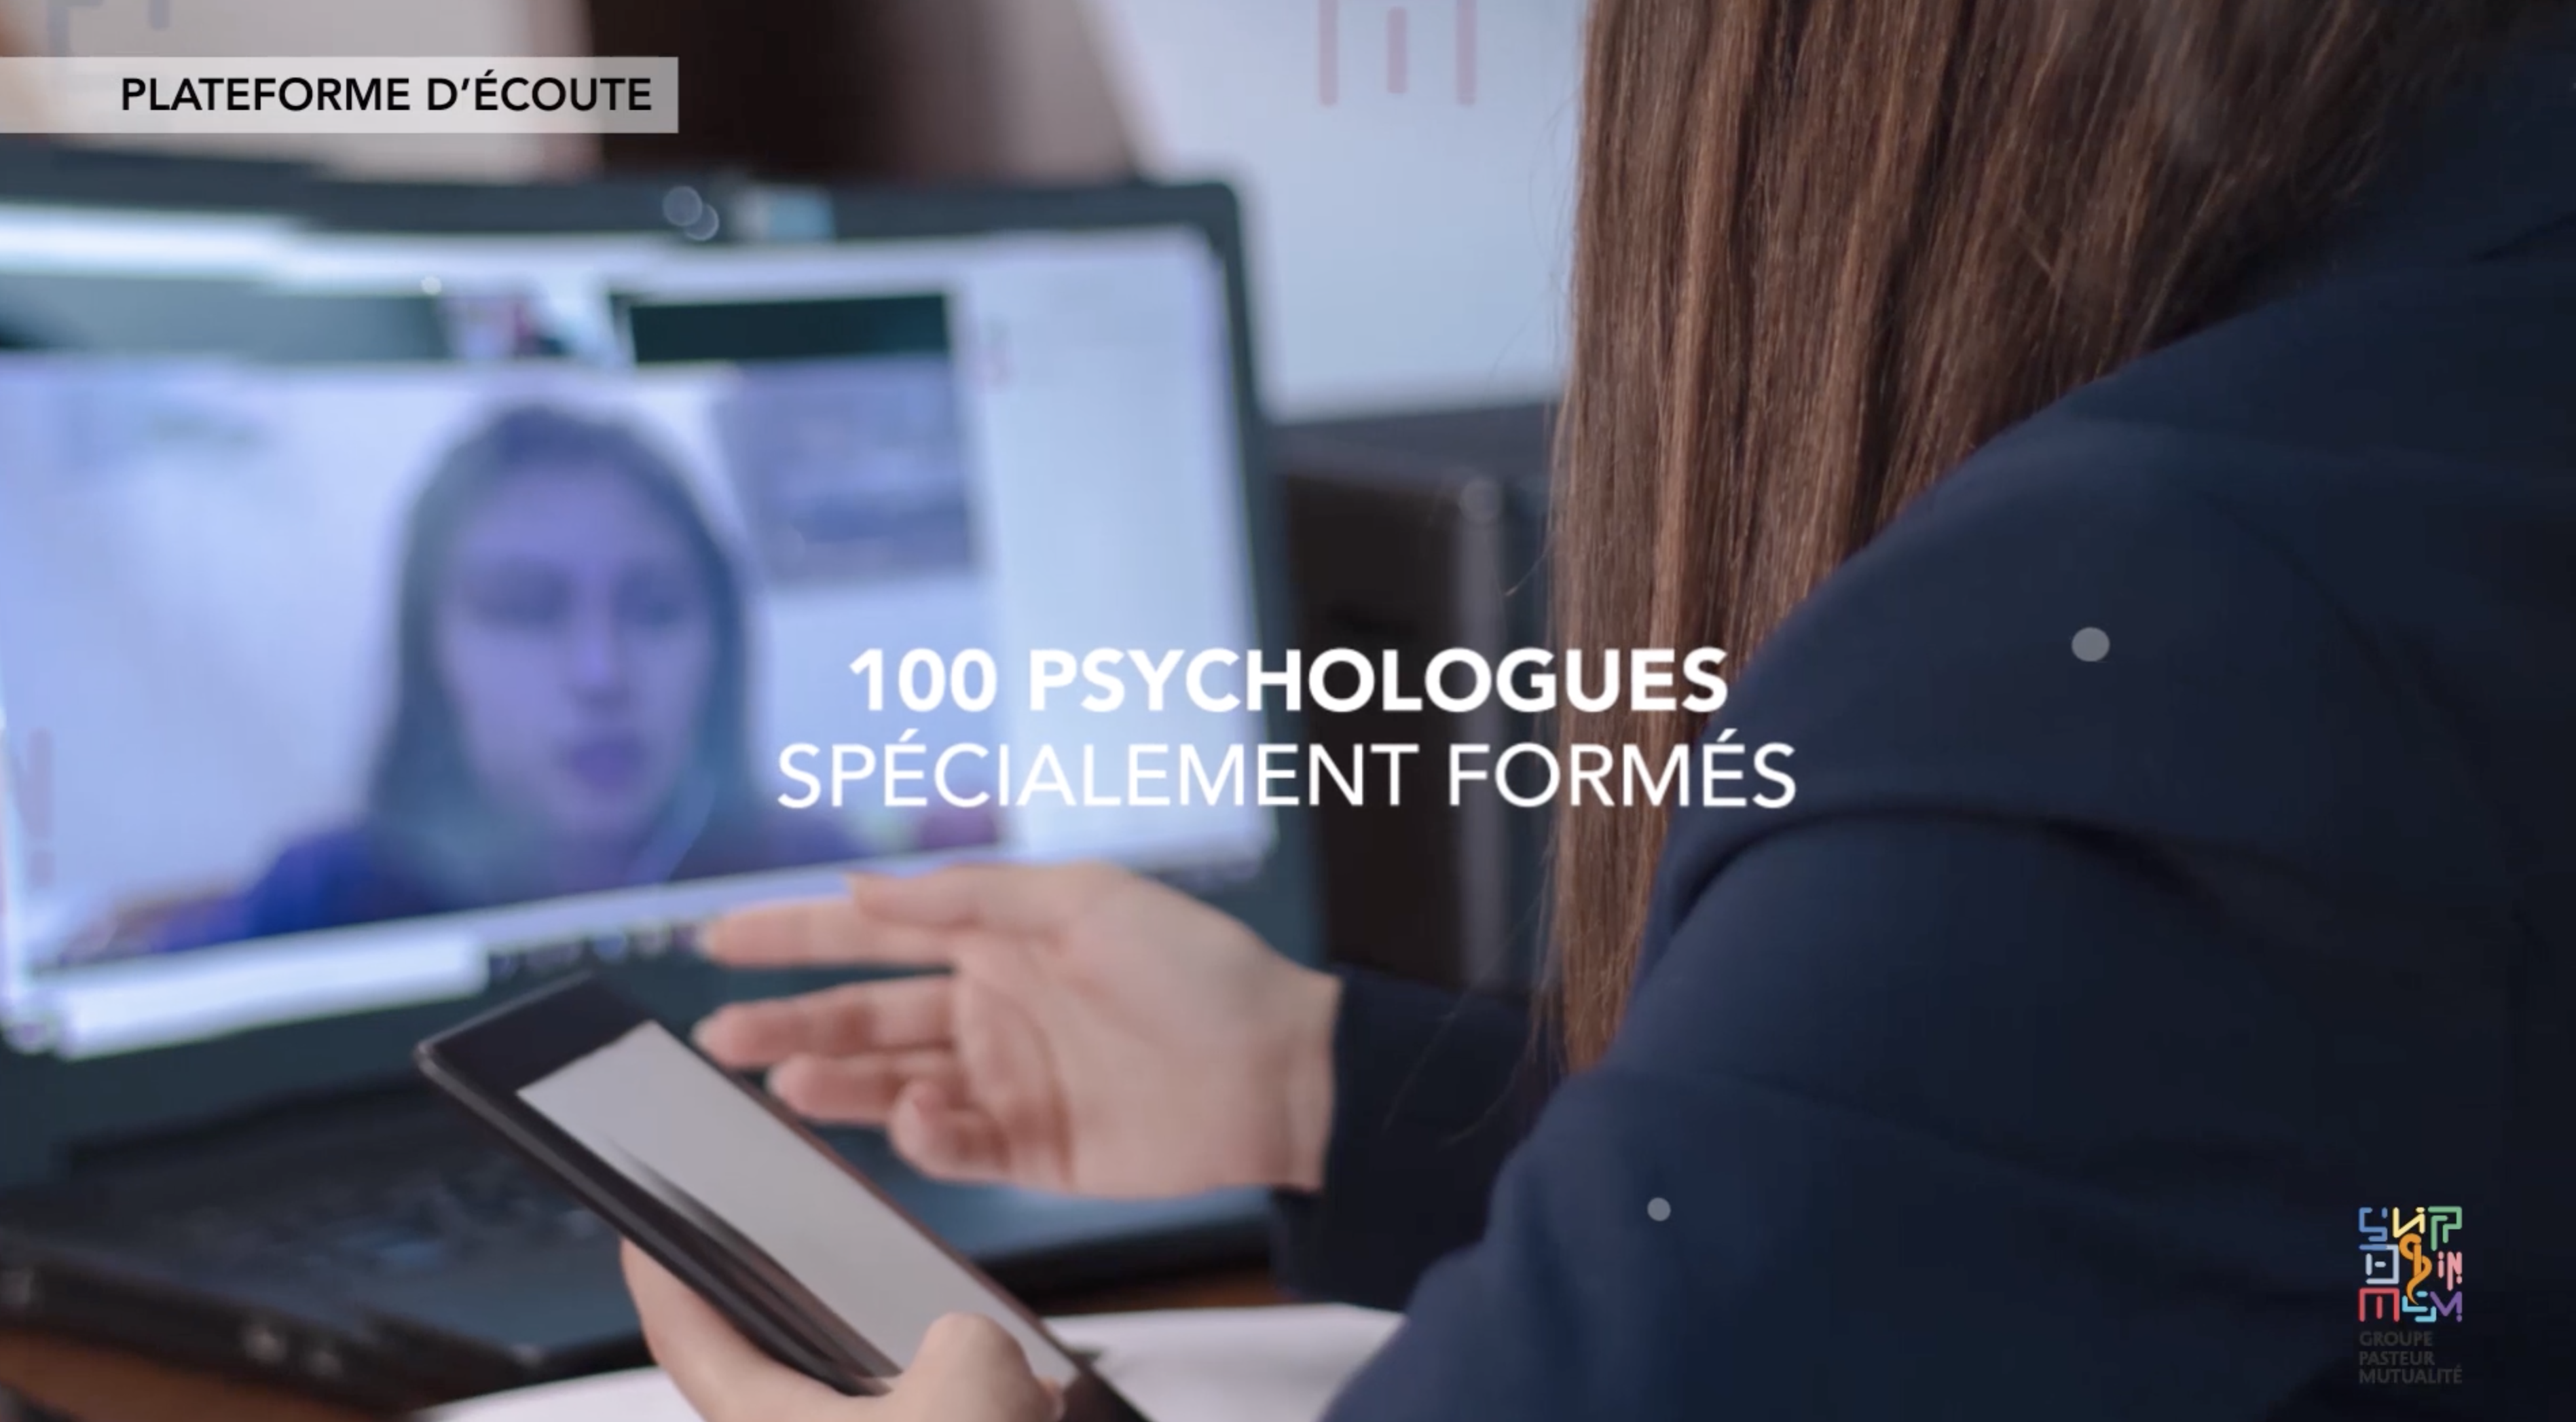 Notre plateforme de soutien psychologique est accessible 24/24H, elle propose une mise en relation avec un réseau de 100 psychologues spécialement formés aux situations de stress précoce ou post-traumatique.